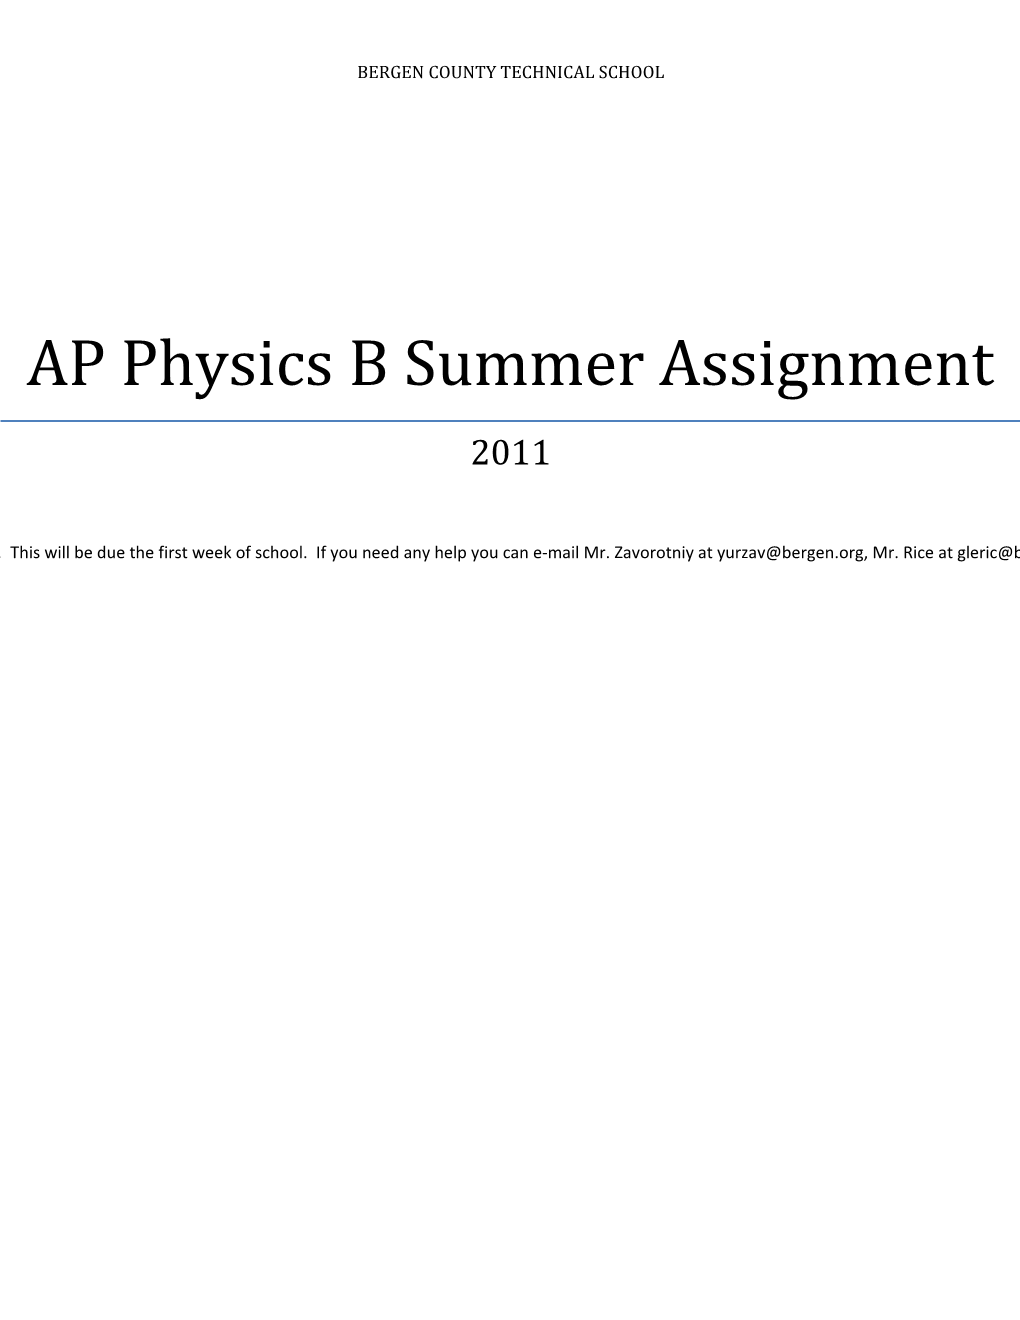 AP Physics B Summer Assignment